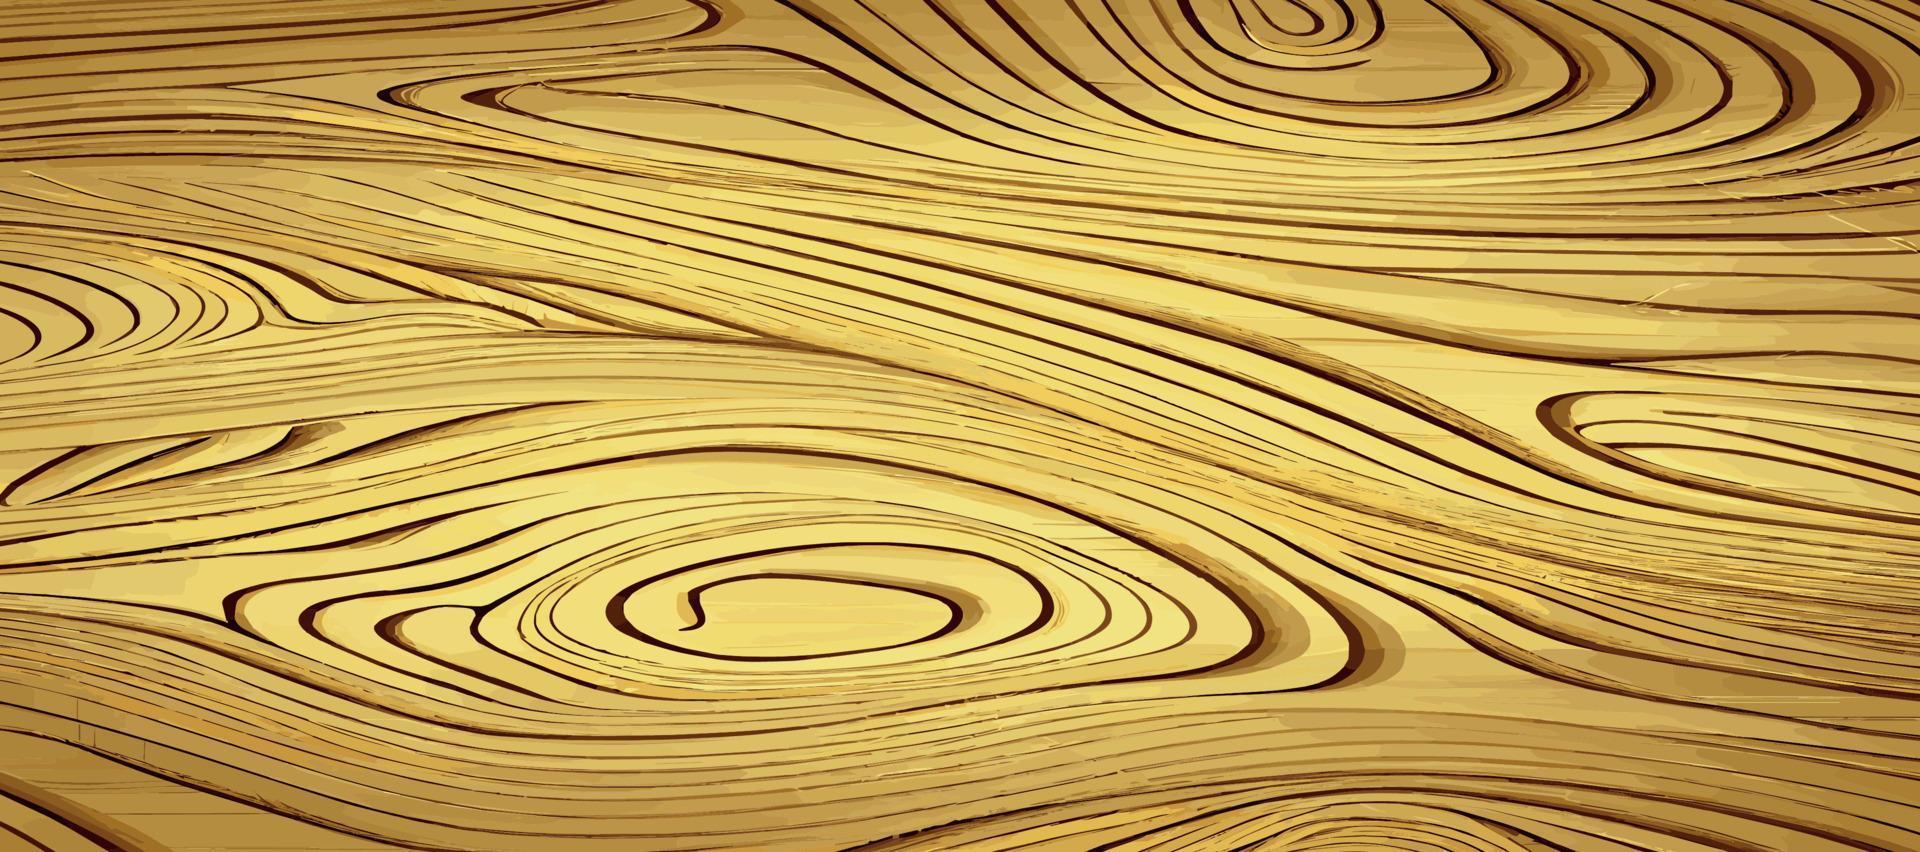 textura de madera clara panorámica con nudos, fondo de tablón - vector